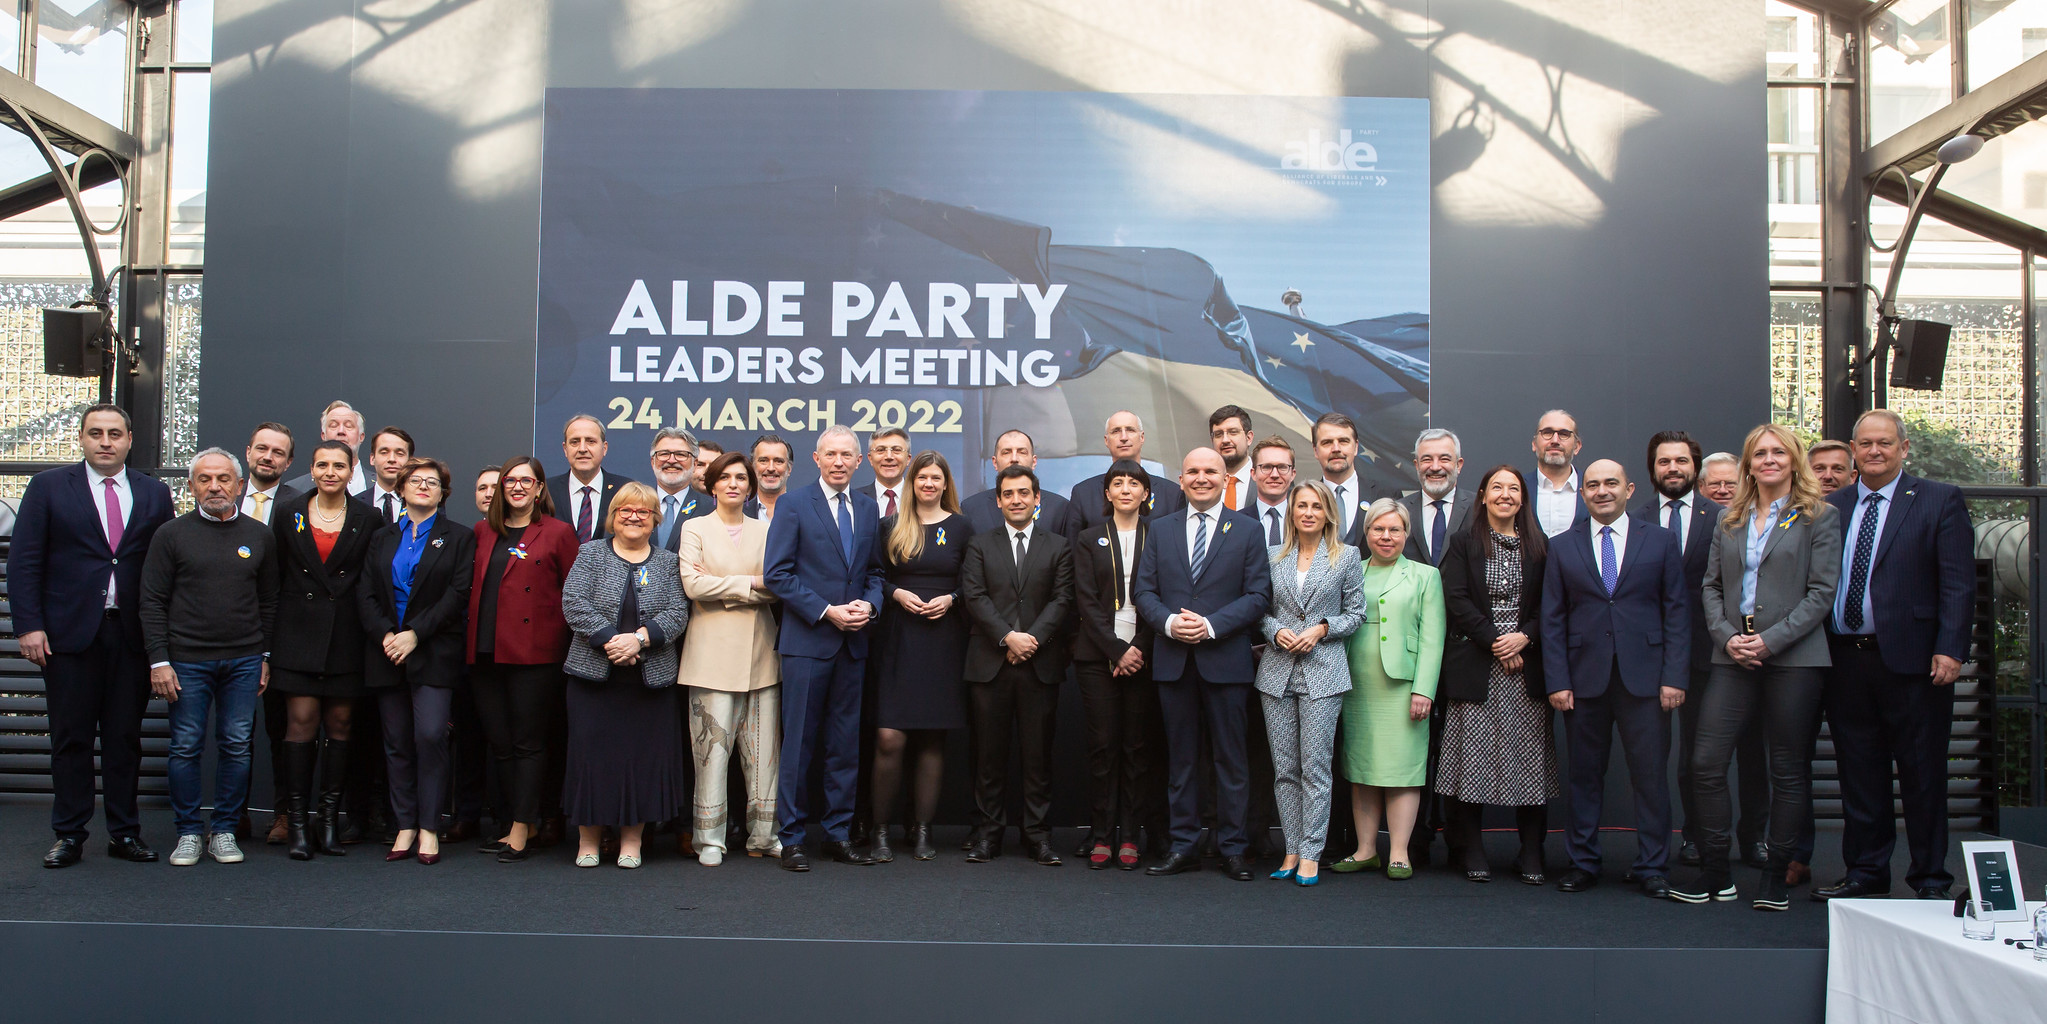 Les libéraux européens en réunion à Bruxelles